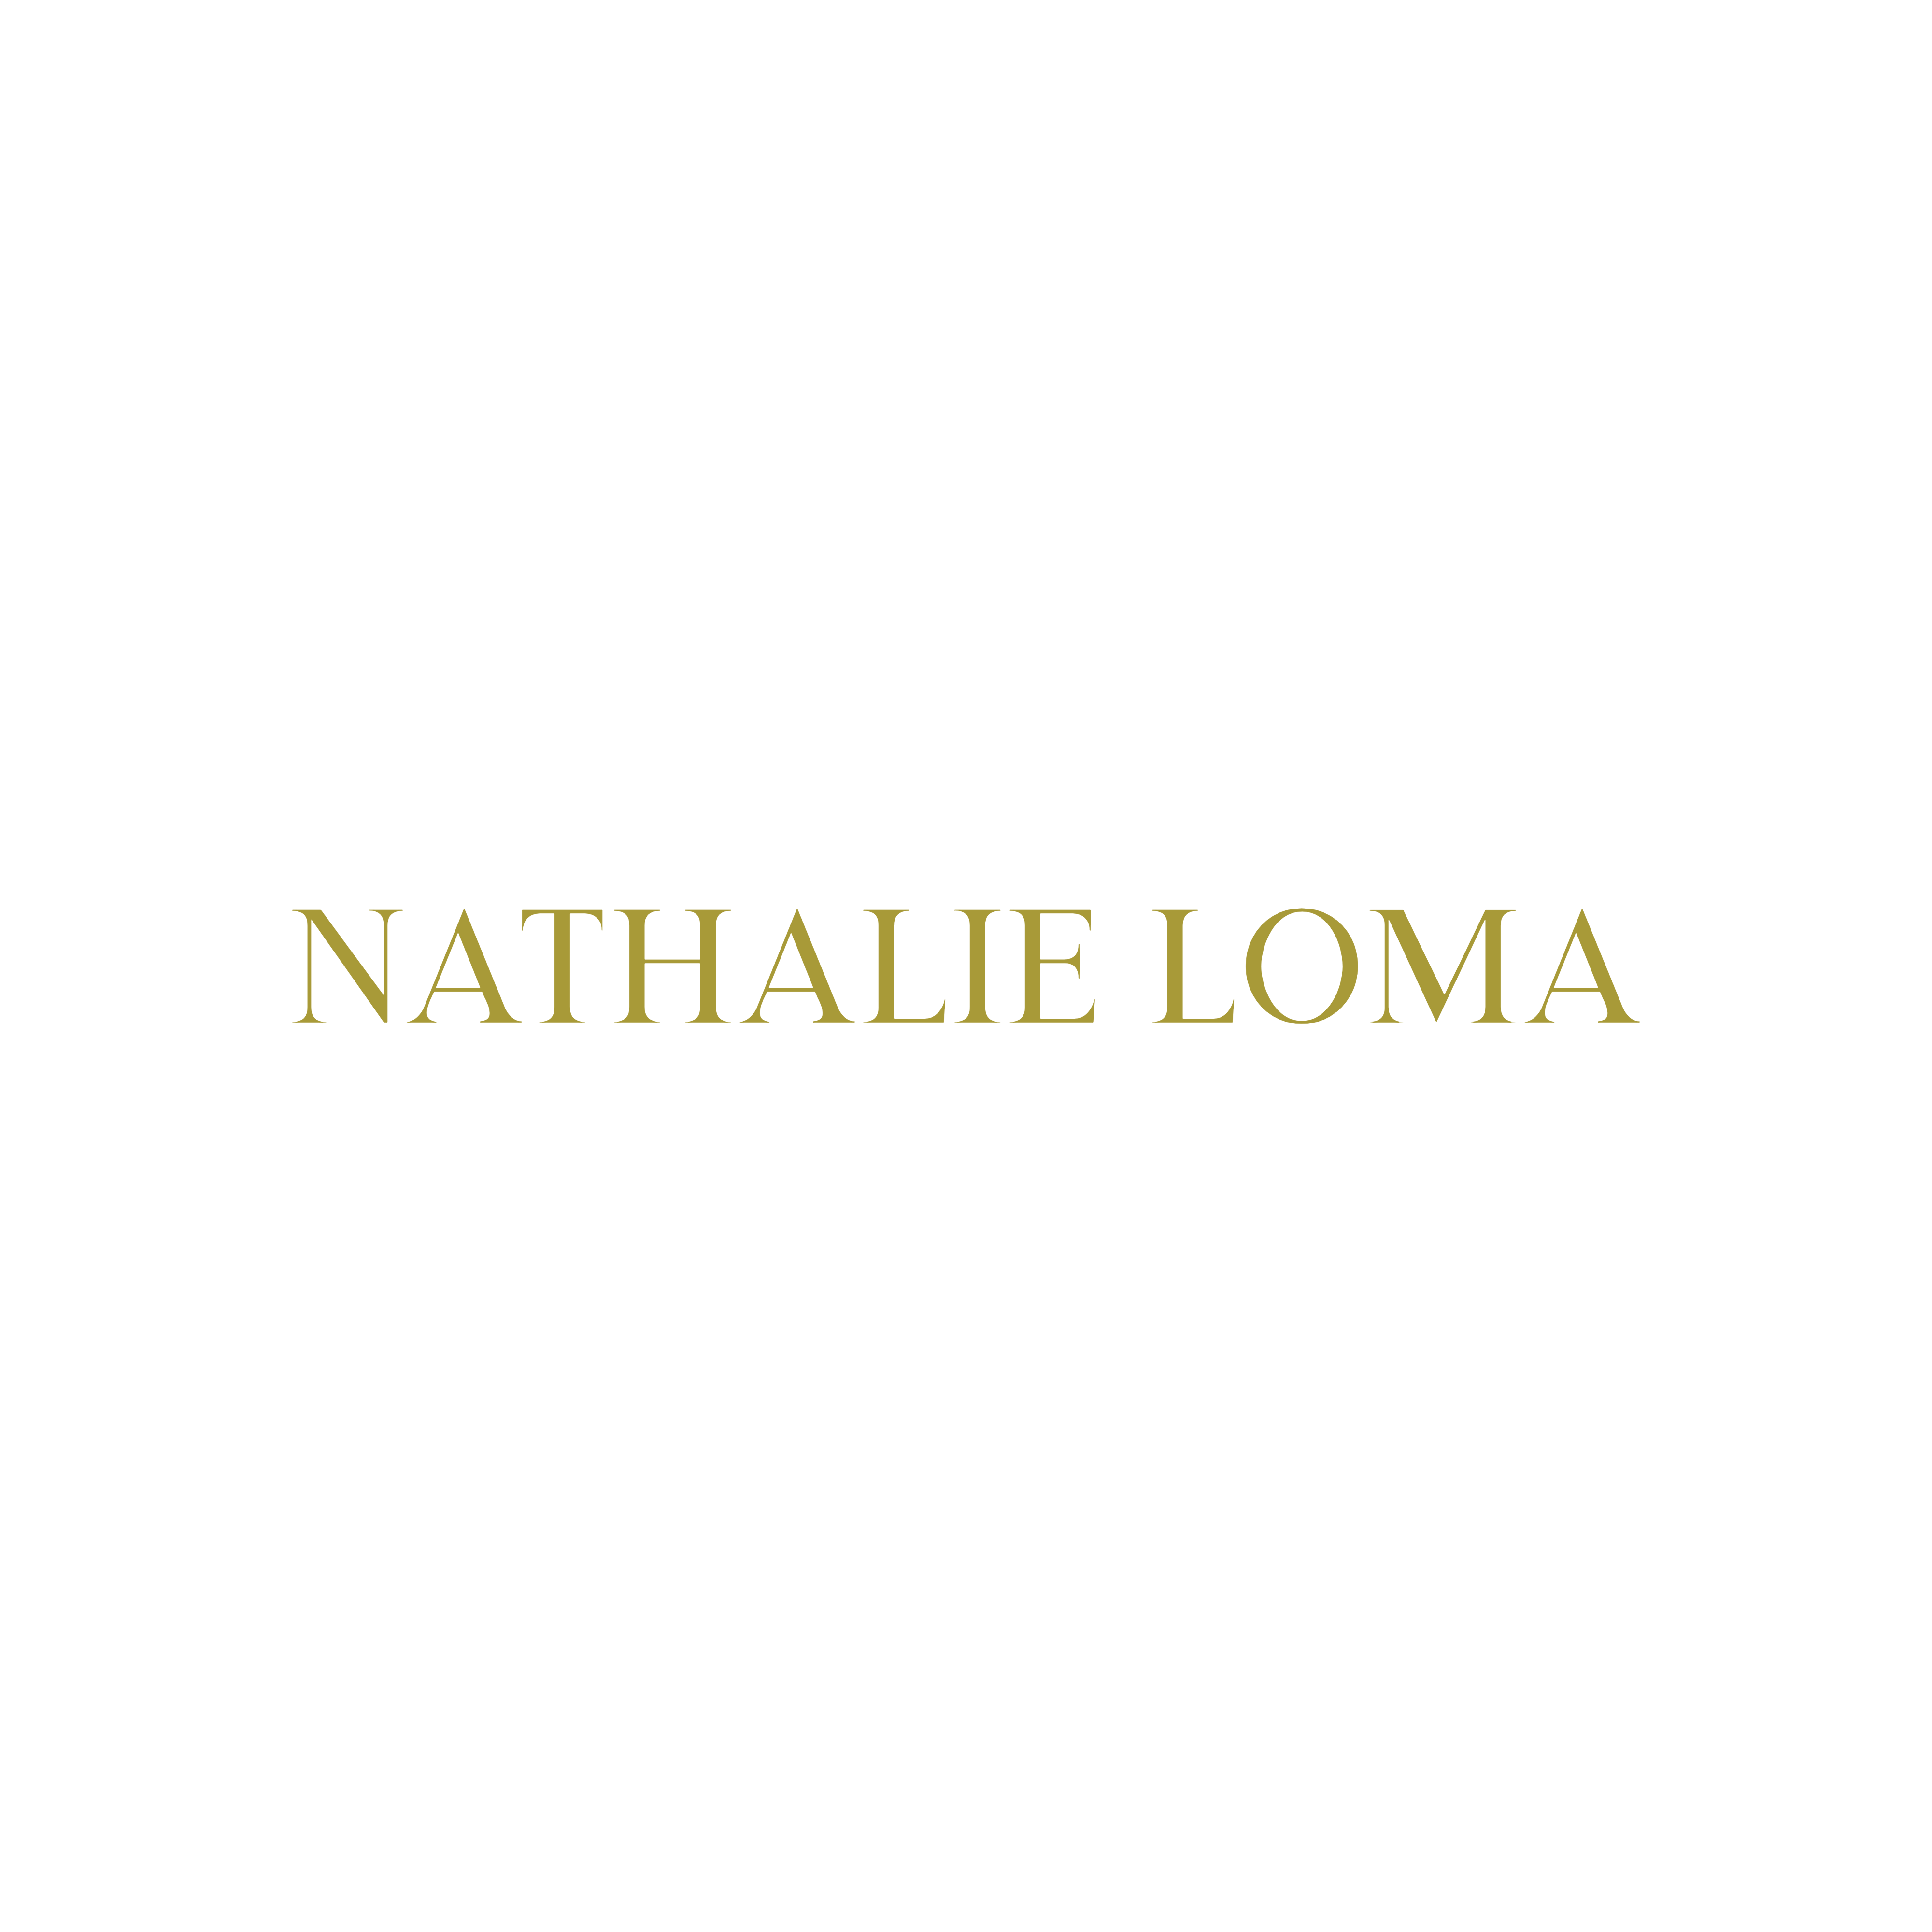 Nathalie Loma